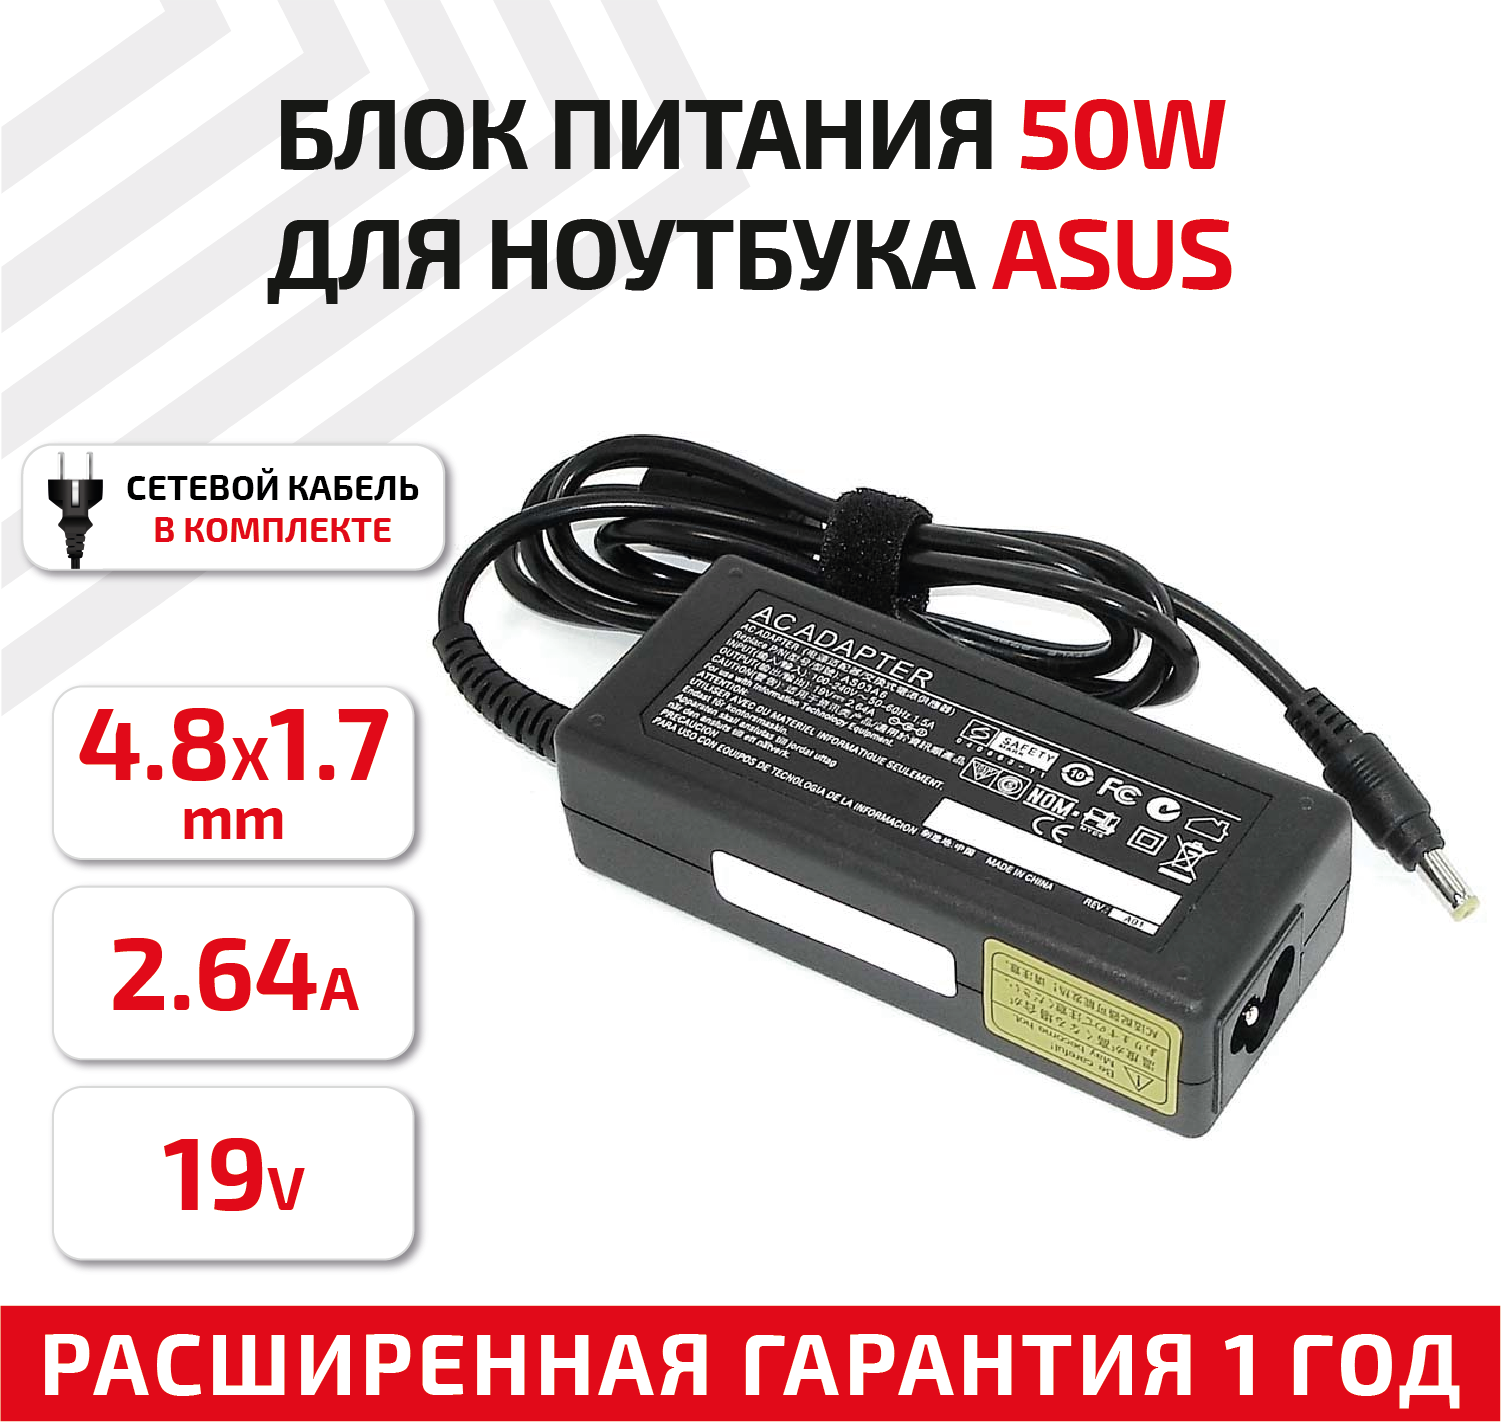 Зарядное устройство (блок питания/зарядка) для ноутбука Asus 19В, 2.64А, 50Вт, 4.8x1.7мм